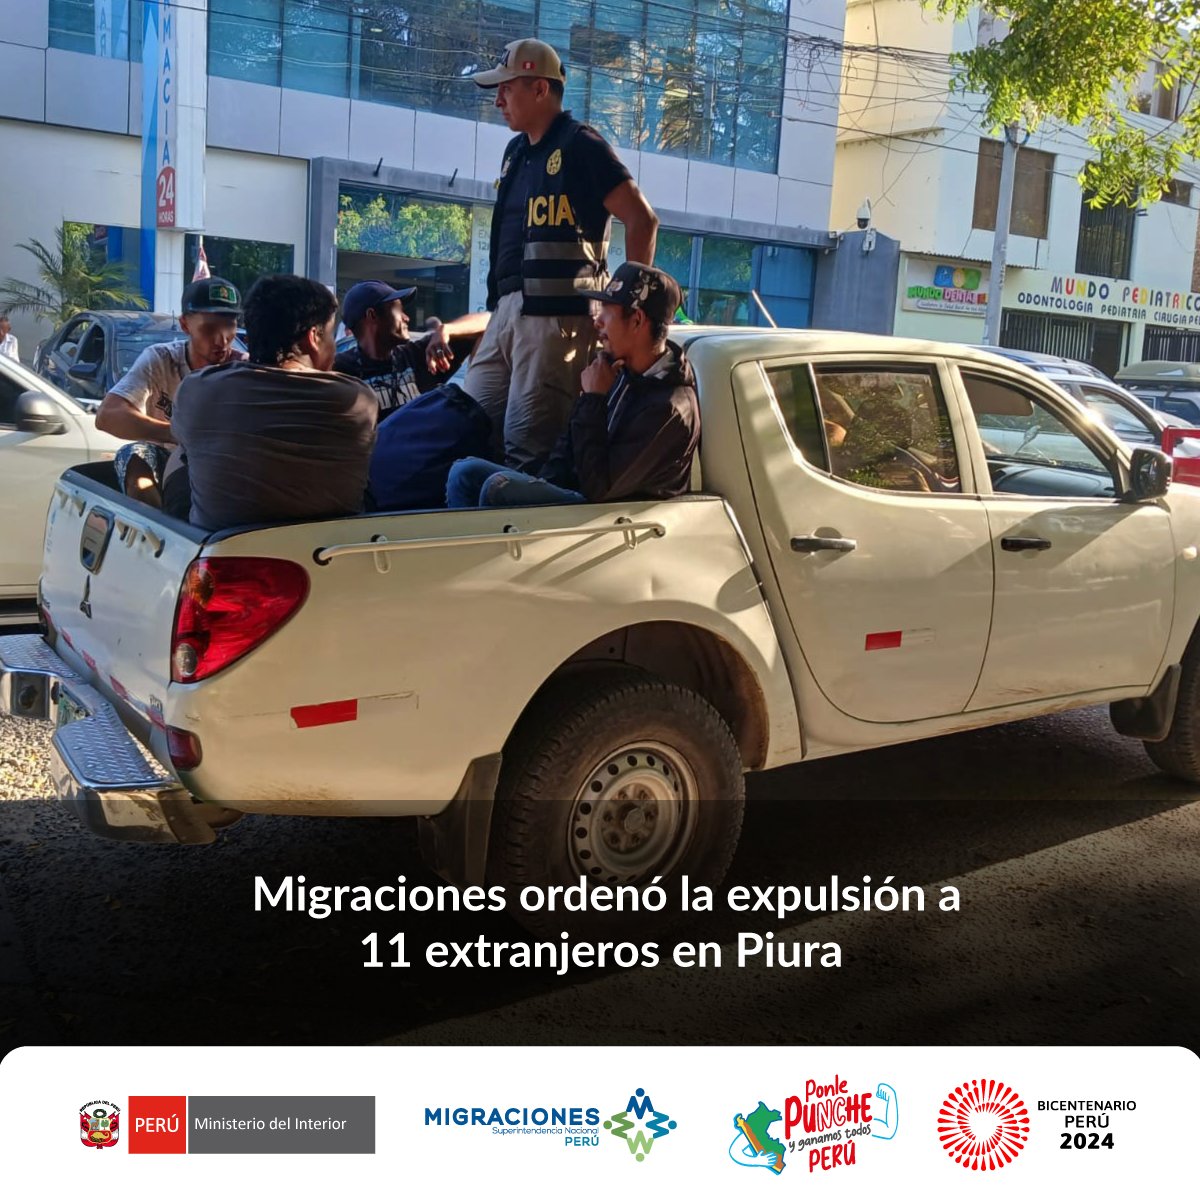 #MigracionesPerú ordenó la expulsión a 11 extranjeros en Piura. Fueron intervenidos en un operativo de verificación y fiscalización migratoria. @PoliciaPeru ejecutó la disposición.

📰 #NotaDePrensa ➡ gob.pe/es/n/935040